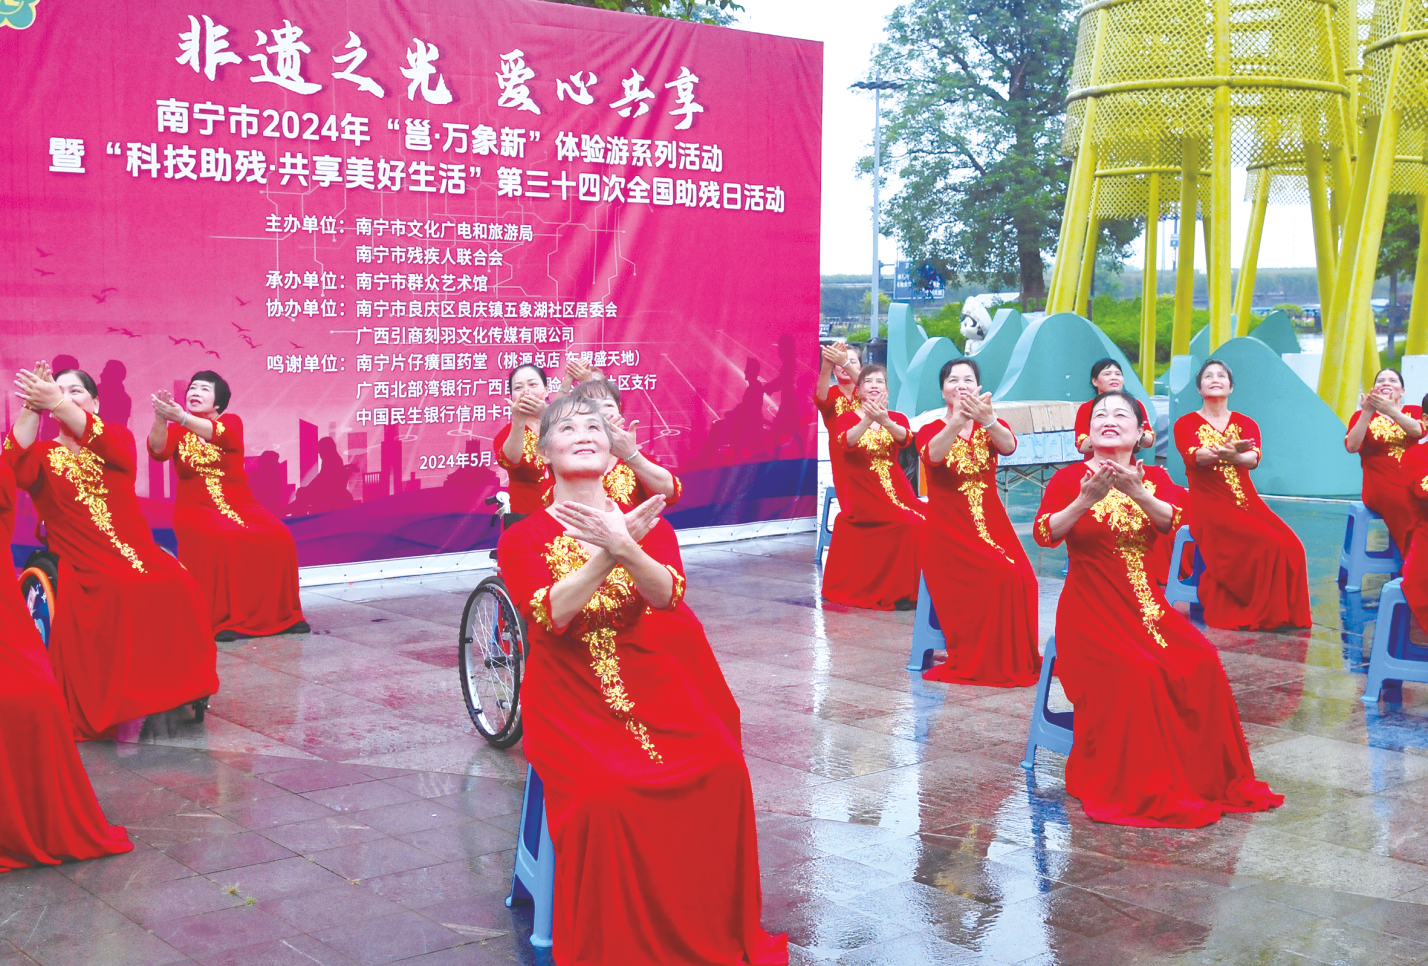     南国之光残疾人艺术团现场表演了手势舞《灯火里的中国》 本报记者宋延康摄